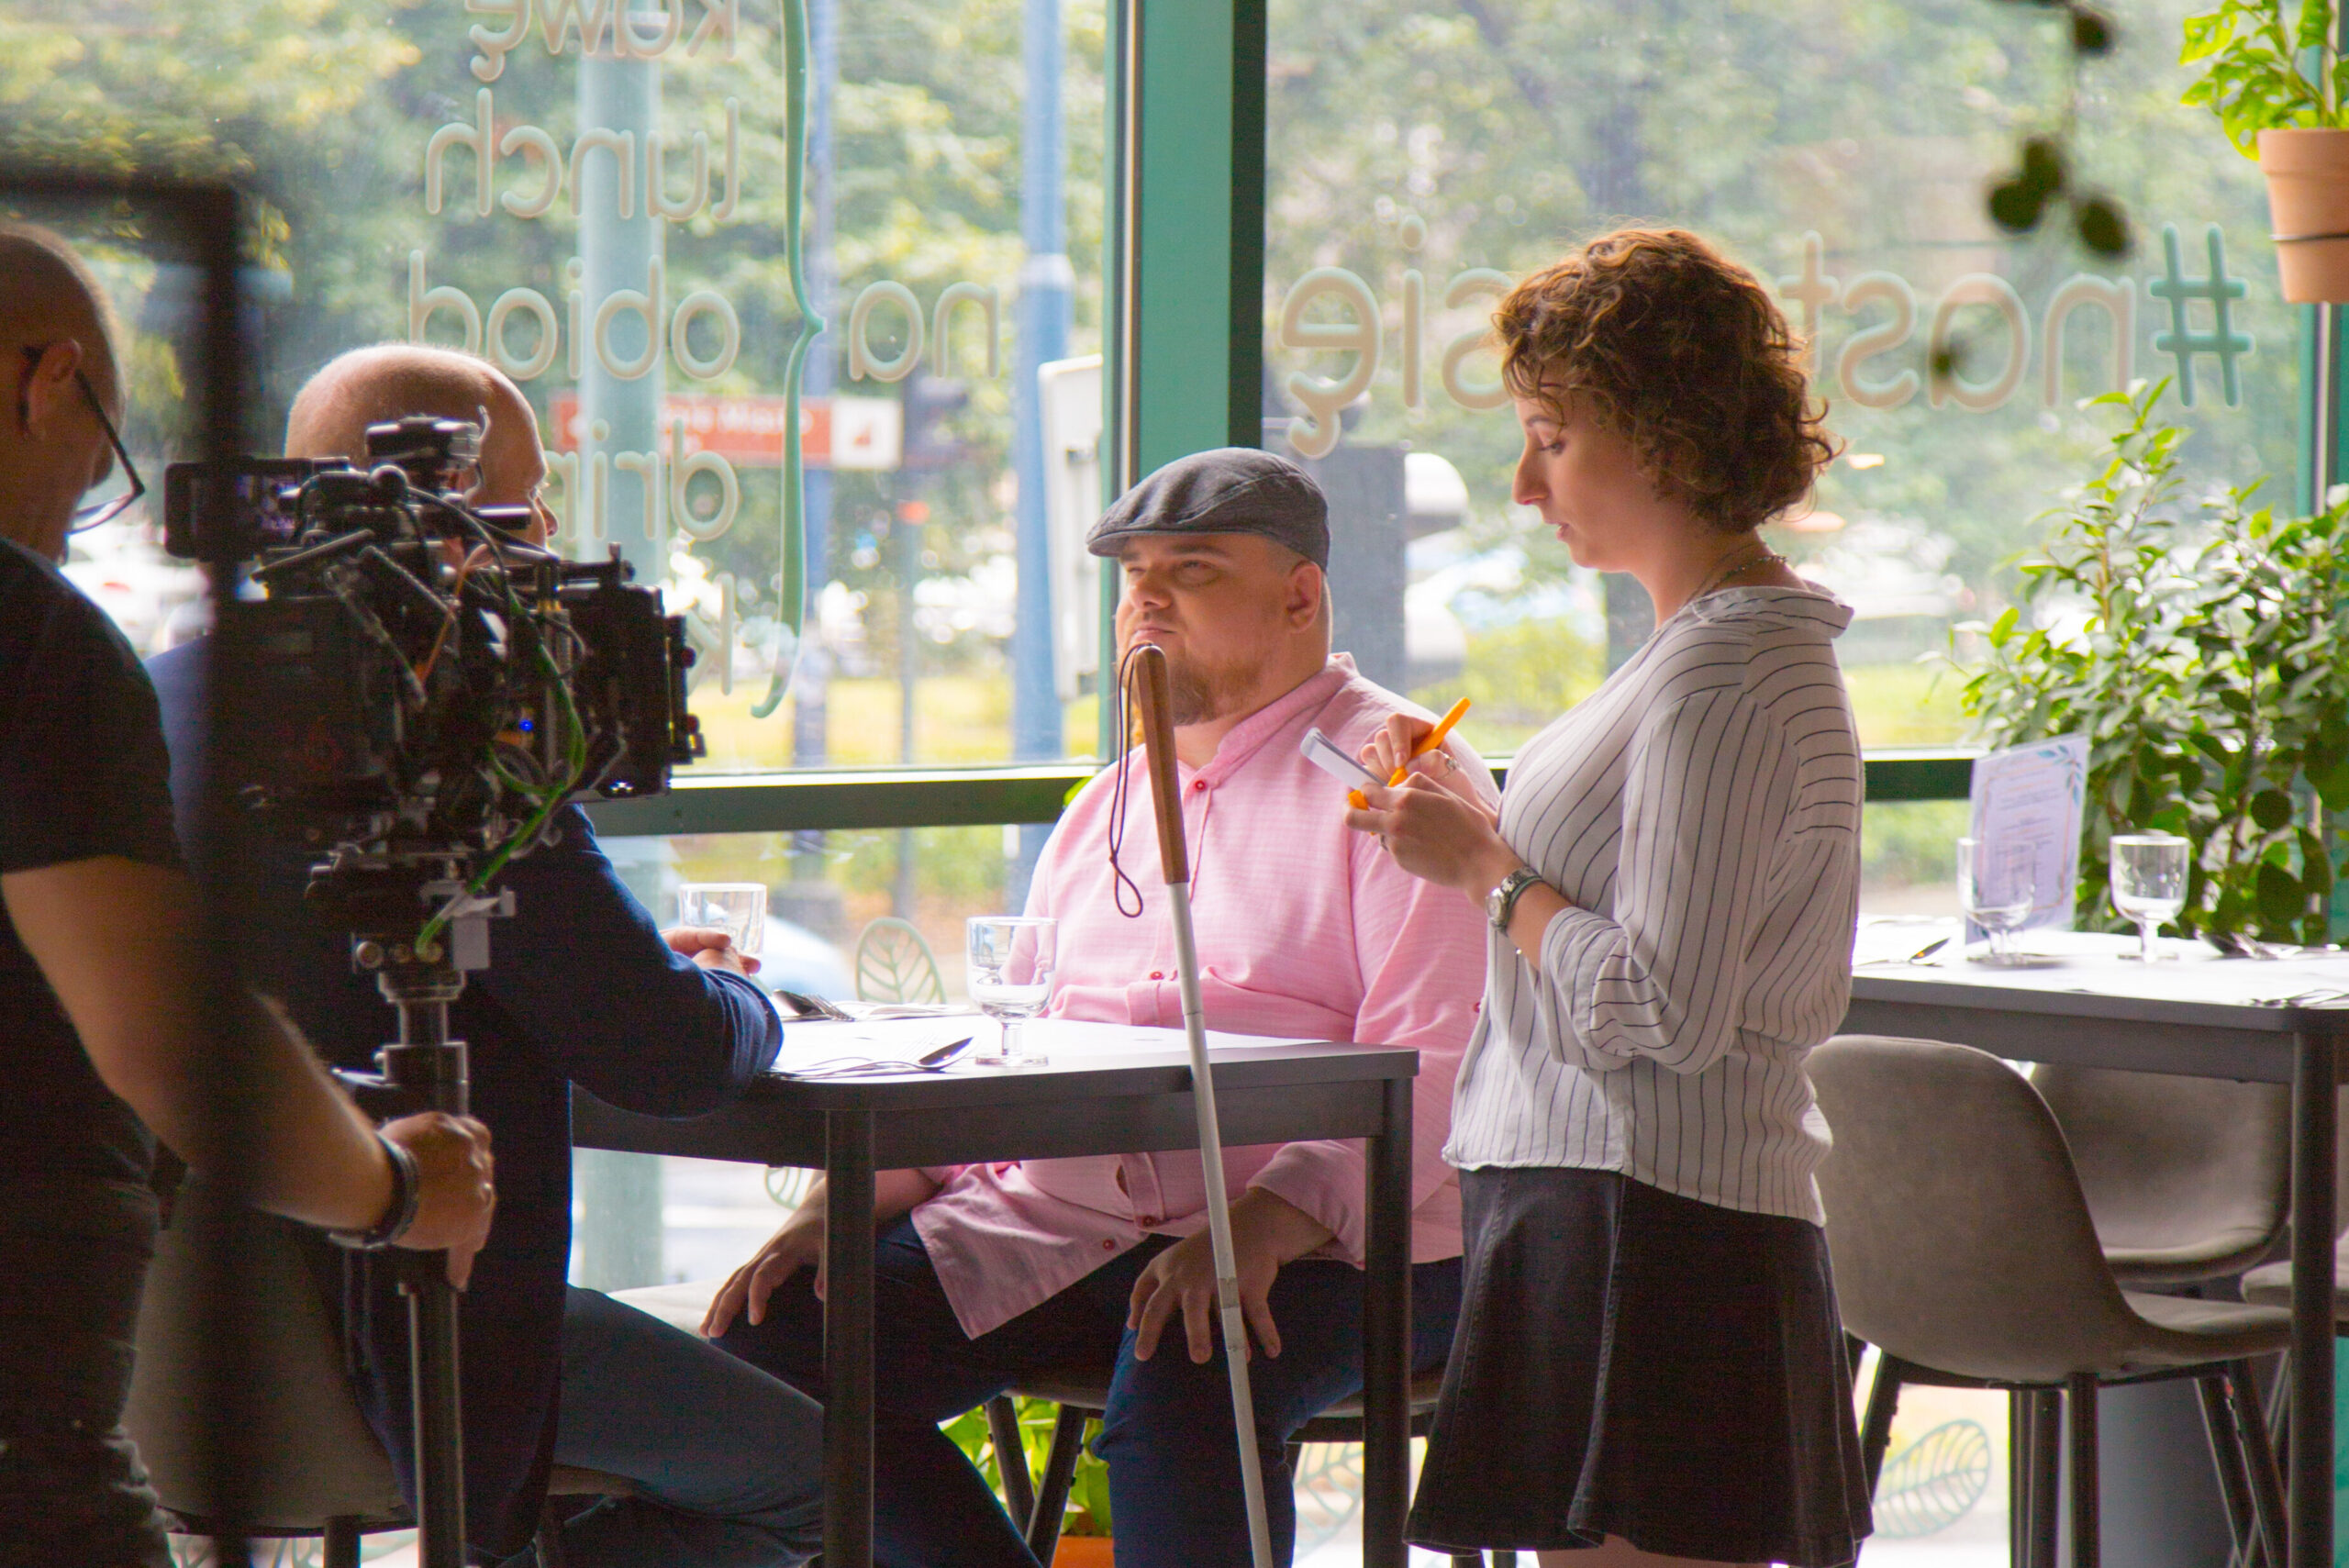 Aktorzy Jan i Michał siedzący przy stoliku w restauracji. Rozmawiają z aktorką Gabrielą, w roli kelnerki.